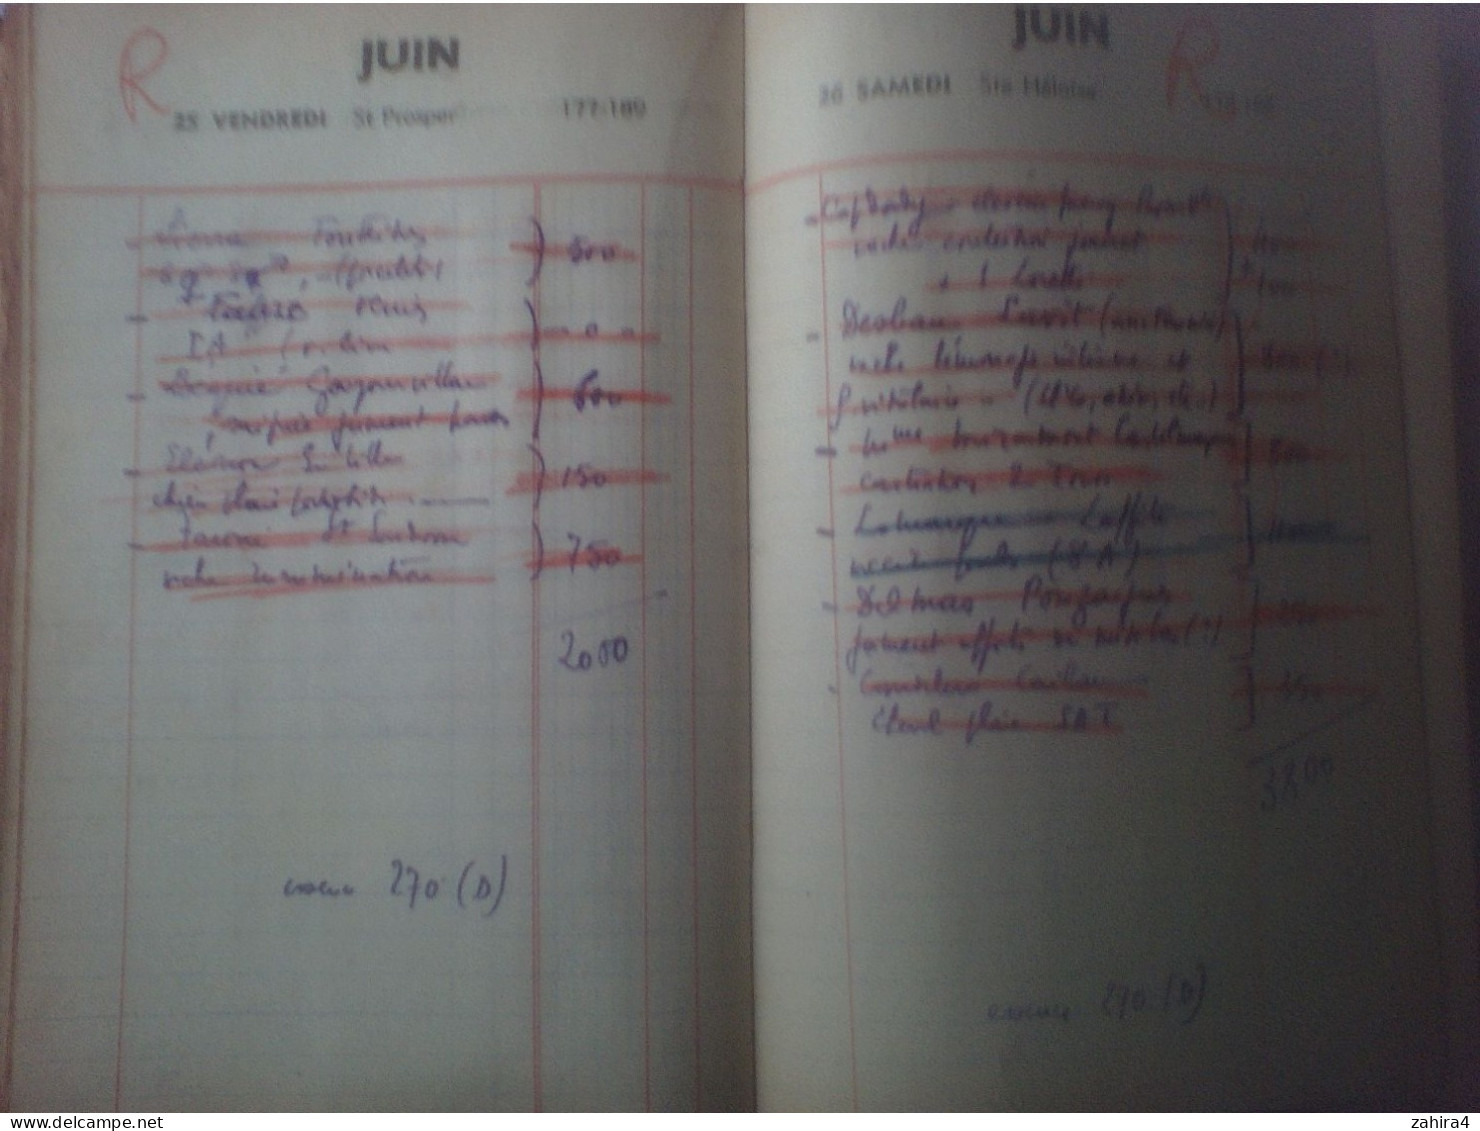 Agenda de bureau pour 1948 d'un vétérinaire de Tarn et Garonne (Possible M. Bachala Castelsarrasin ?)